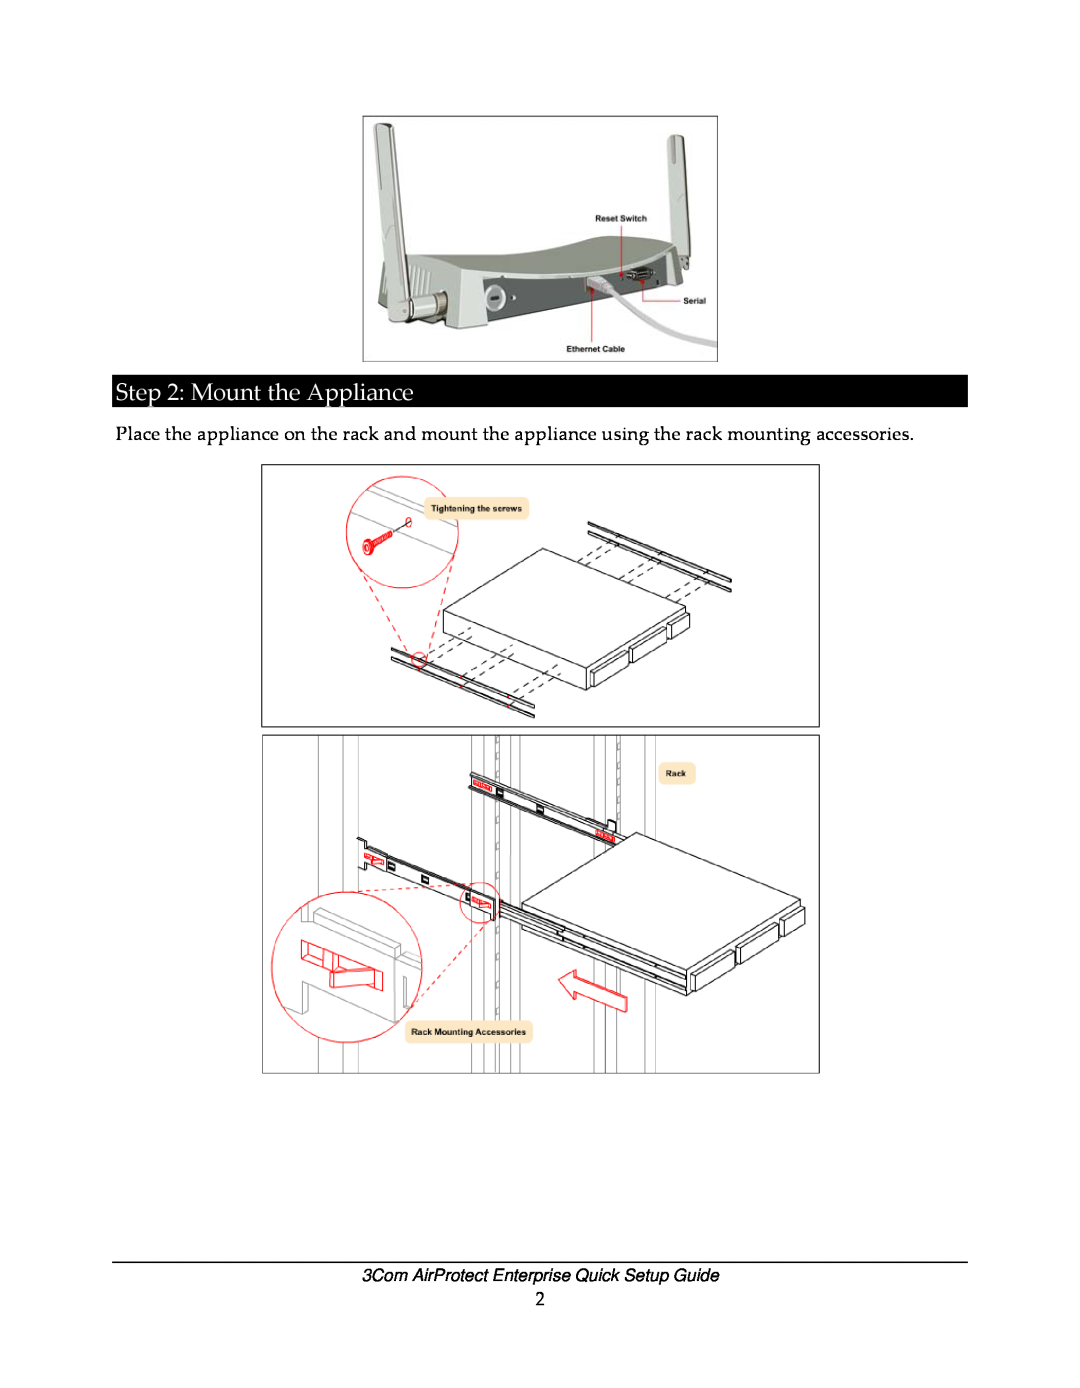 3Com 6100 setup guide Mount the Appliance, 3Com AirProtect Enterprise Quick Setup Guide 